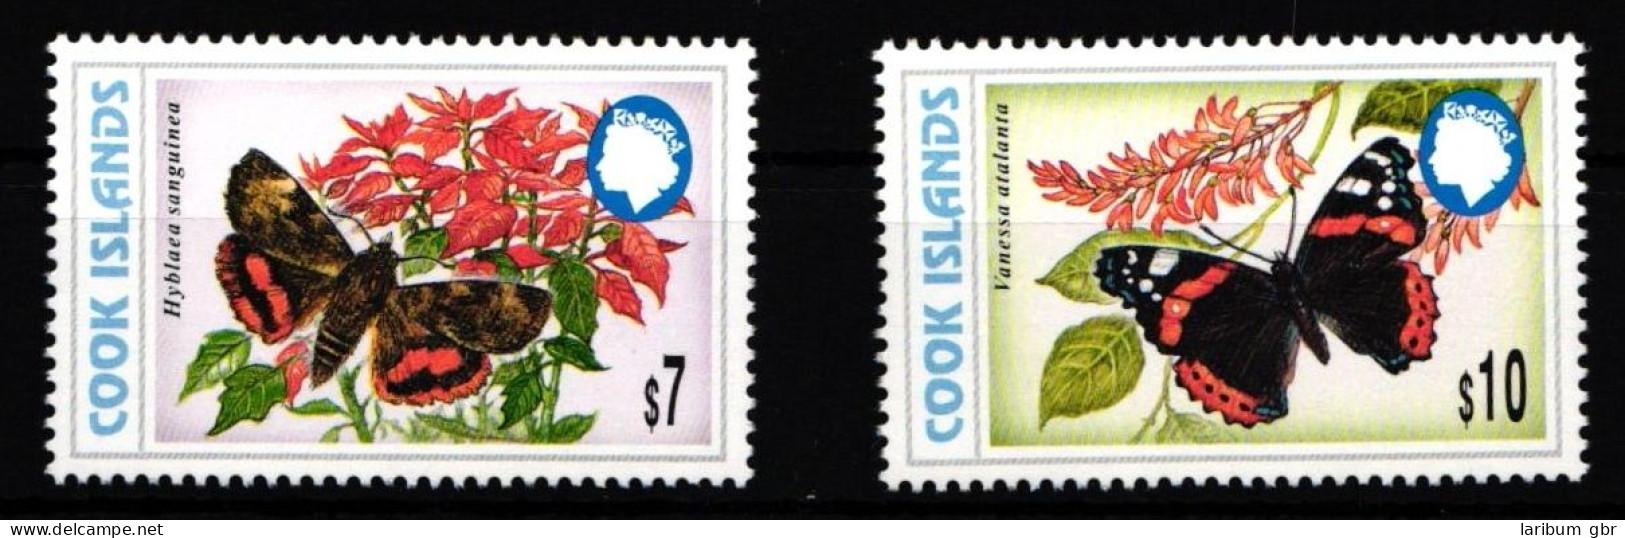 Cookinseln 1491 Und 1492 Postfrisch Schmetterling #IH012 - Islas Cook